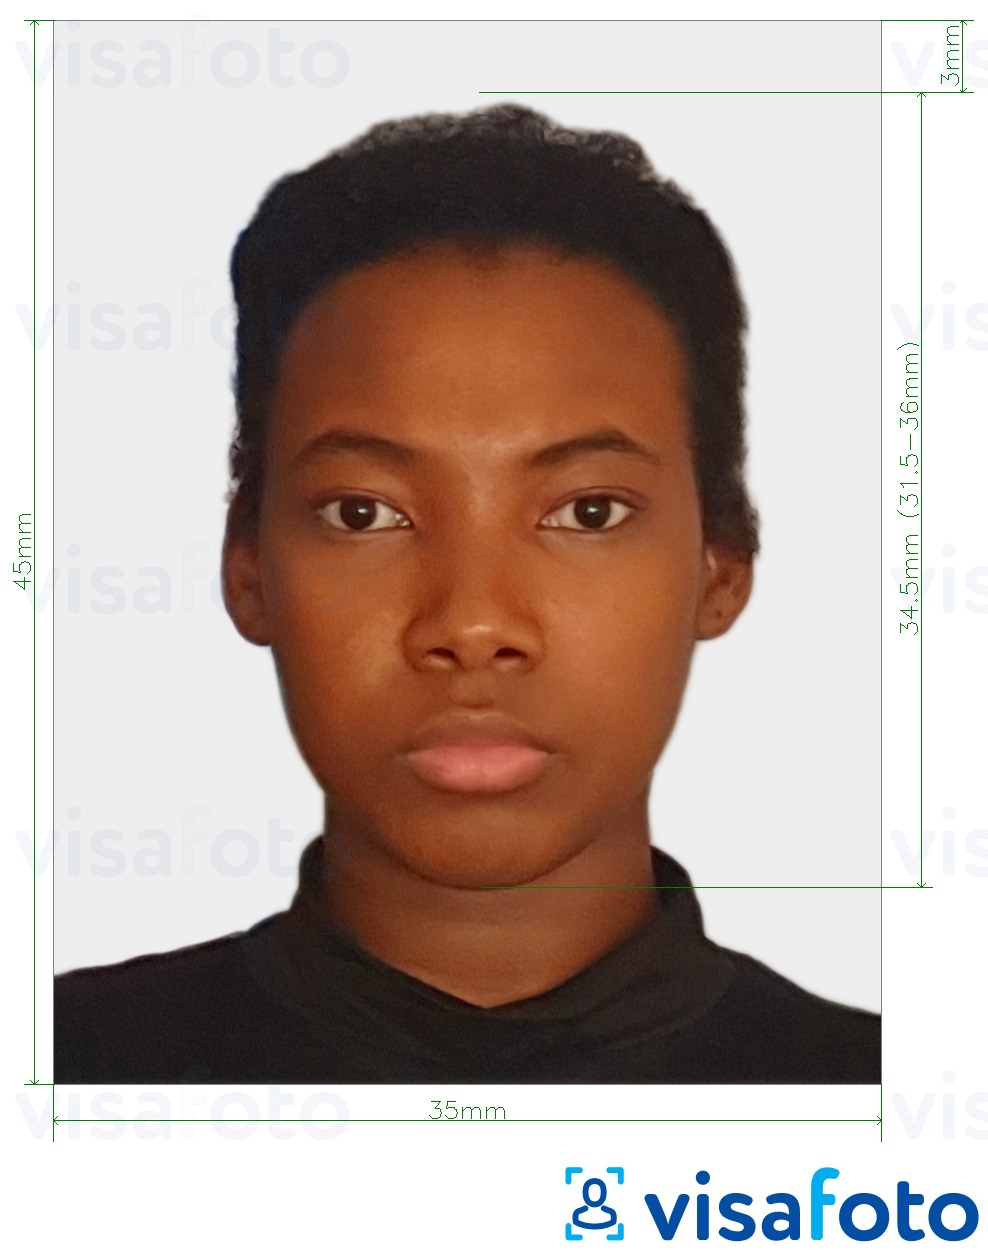 Exemplo de foto para Sul da África Visa 35x45 mm (3.5x4.5 cm) com especificação exata de dimensão